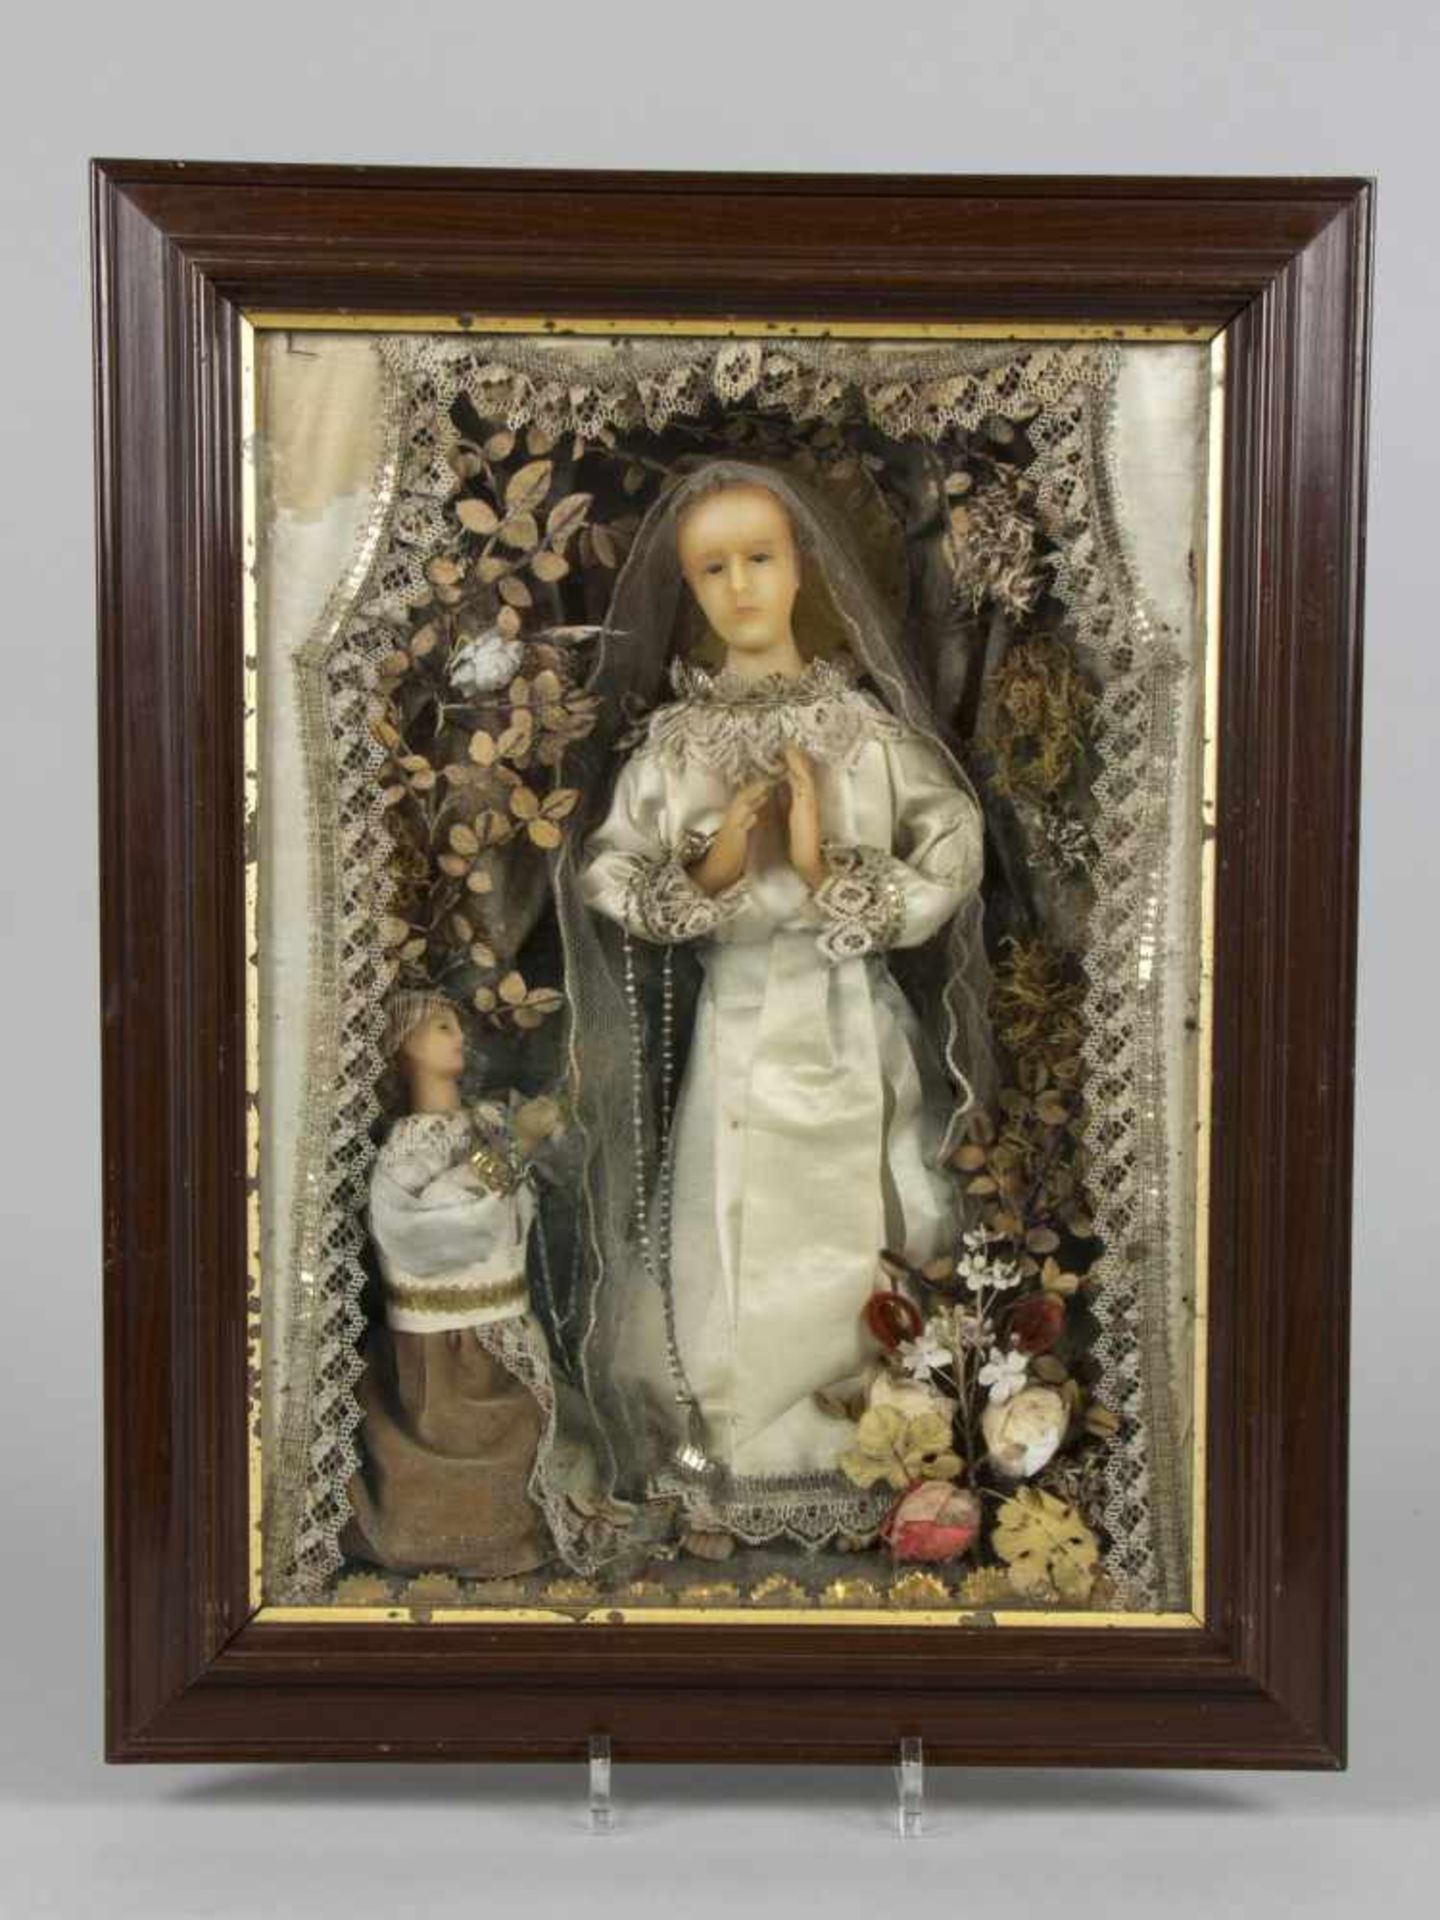 KlosterarbeitJungfrau Maria. Versch. Materialien u.a. Wachs, Gold- und Silberbouillondraht,